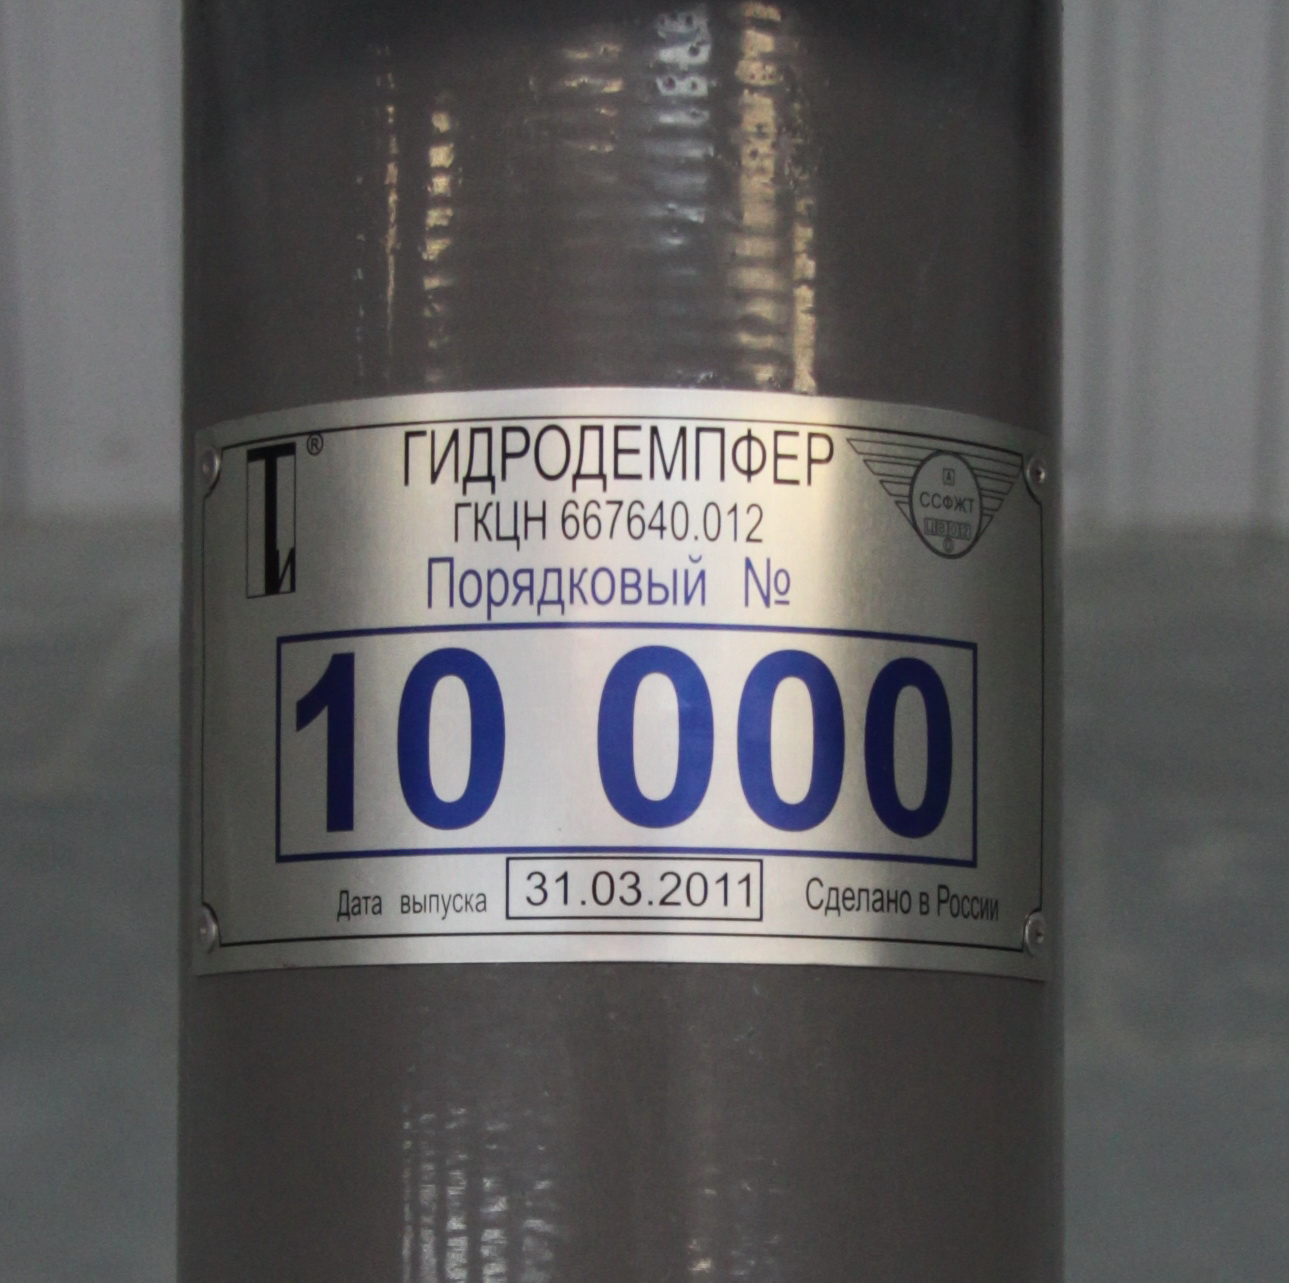 Выпуск юбилейного серийного 10 000-го гидродемпфера